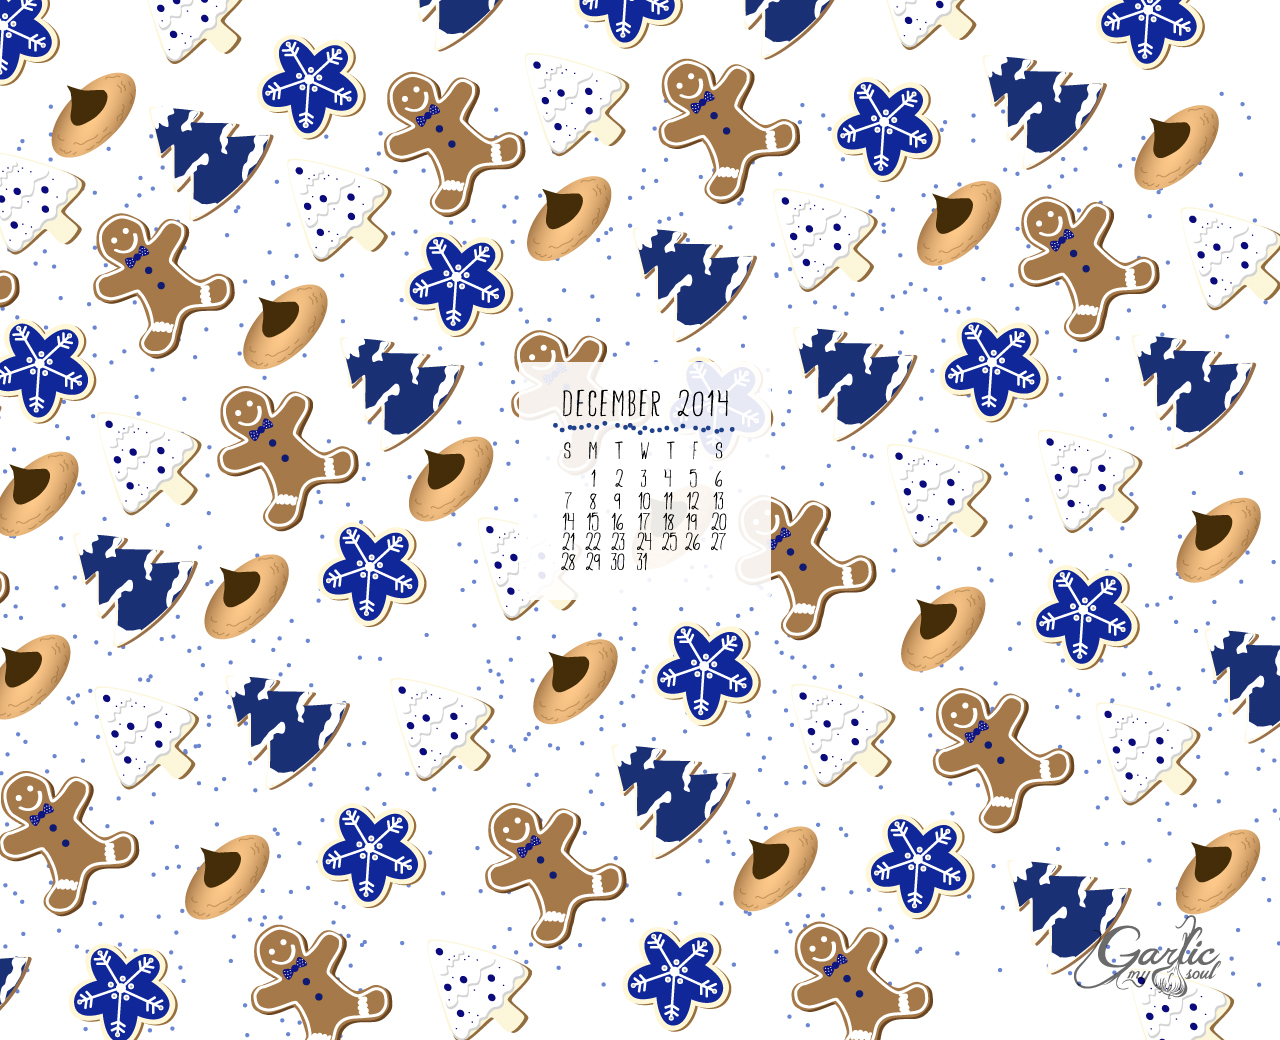 December Desktop Calendar | Garlic, My Soul